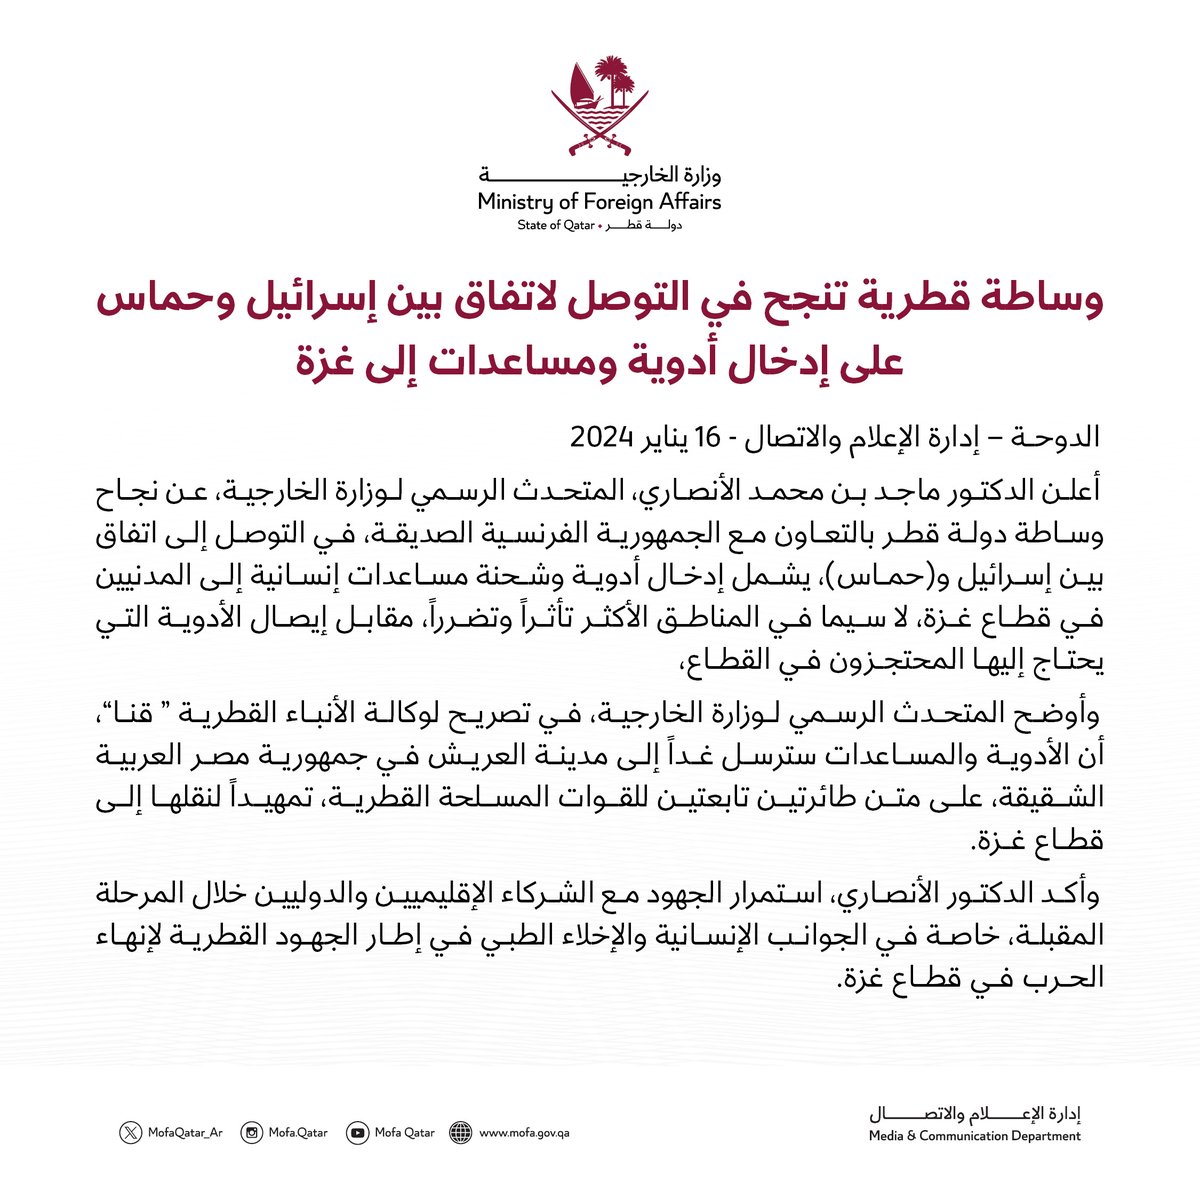 وساطة قطرية تنجح في التوصل لاتفاق بين إسرائيل وحماس على إدخال أدوية ومساعدات إلى غزة #الخارجية_القطرية